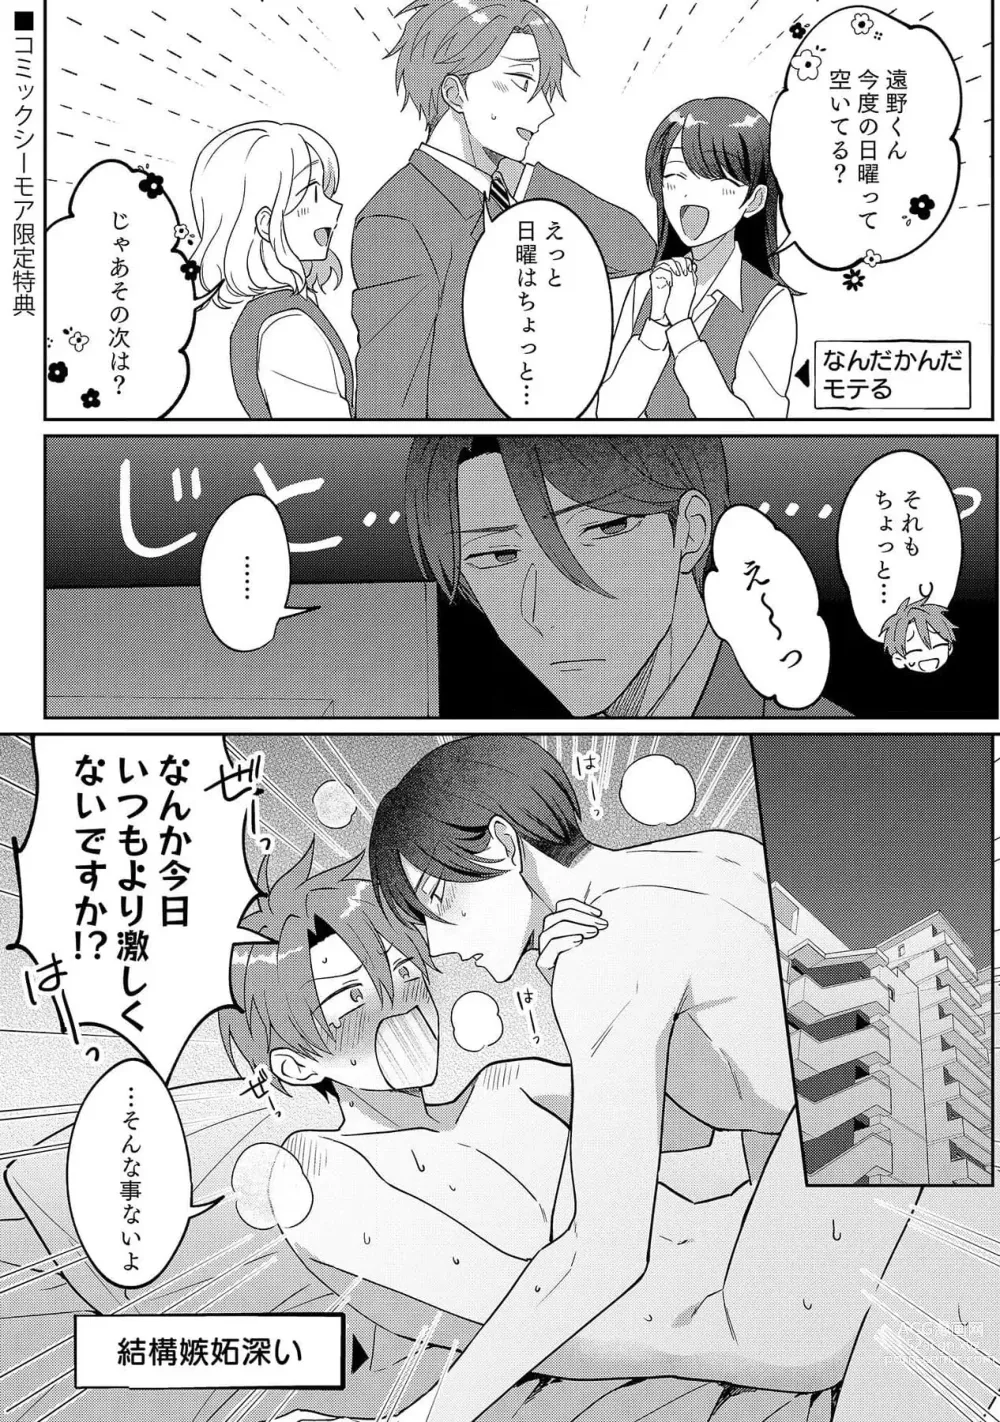 Page 186 of manga Ashita mo Soba ni Itekuretara